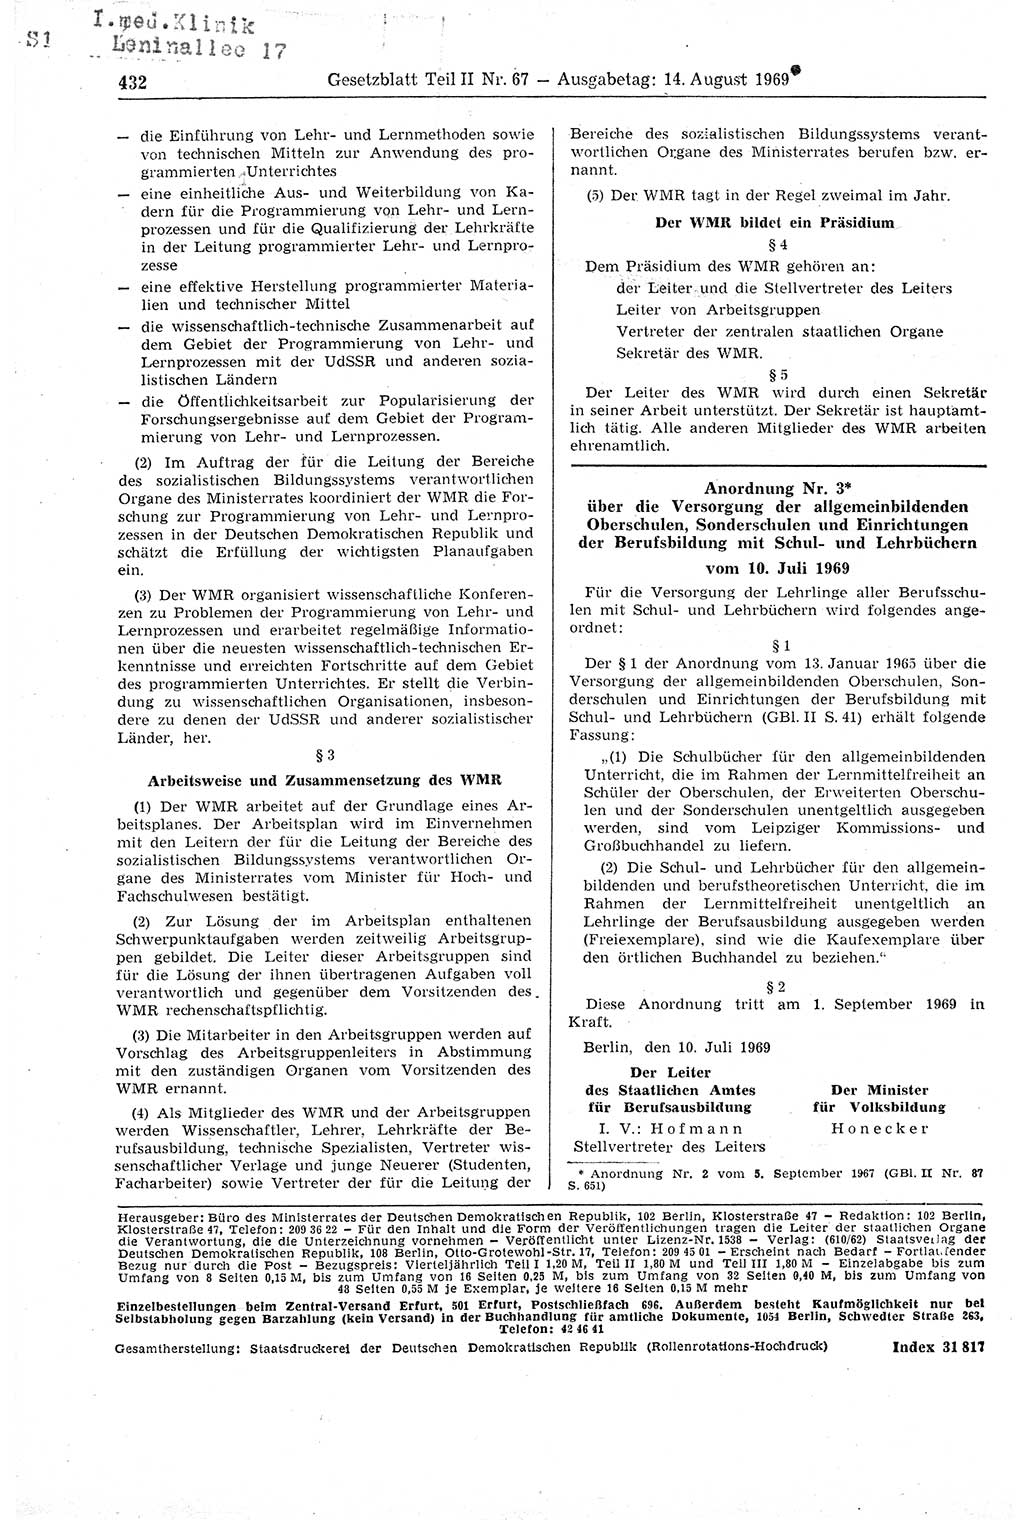 Gesetzblatt (GBl.) der Deutschen Demokratischen Republik (DDR) Teil ⅠⅠ 1969, Seite 432 (GBl. DDR ⅠⅠ 1969, S. 432)